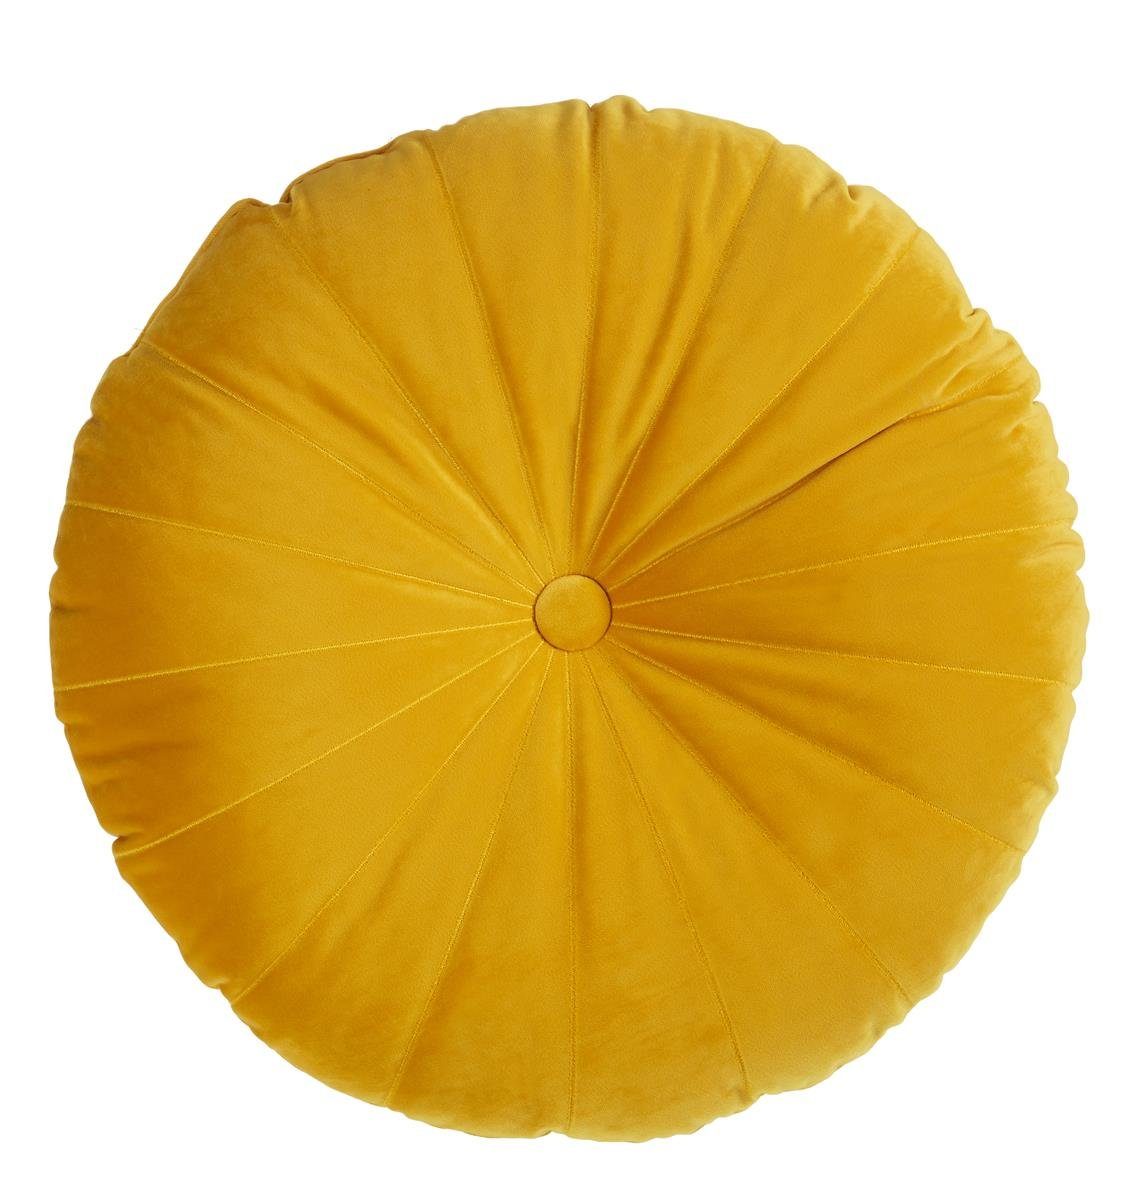 KAAT Amsterdam Dekokissen Mandarin Yellow 40X40 Gelb 40 x 40 cm 1 Zierkisse | Dekokissen